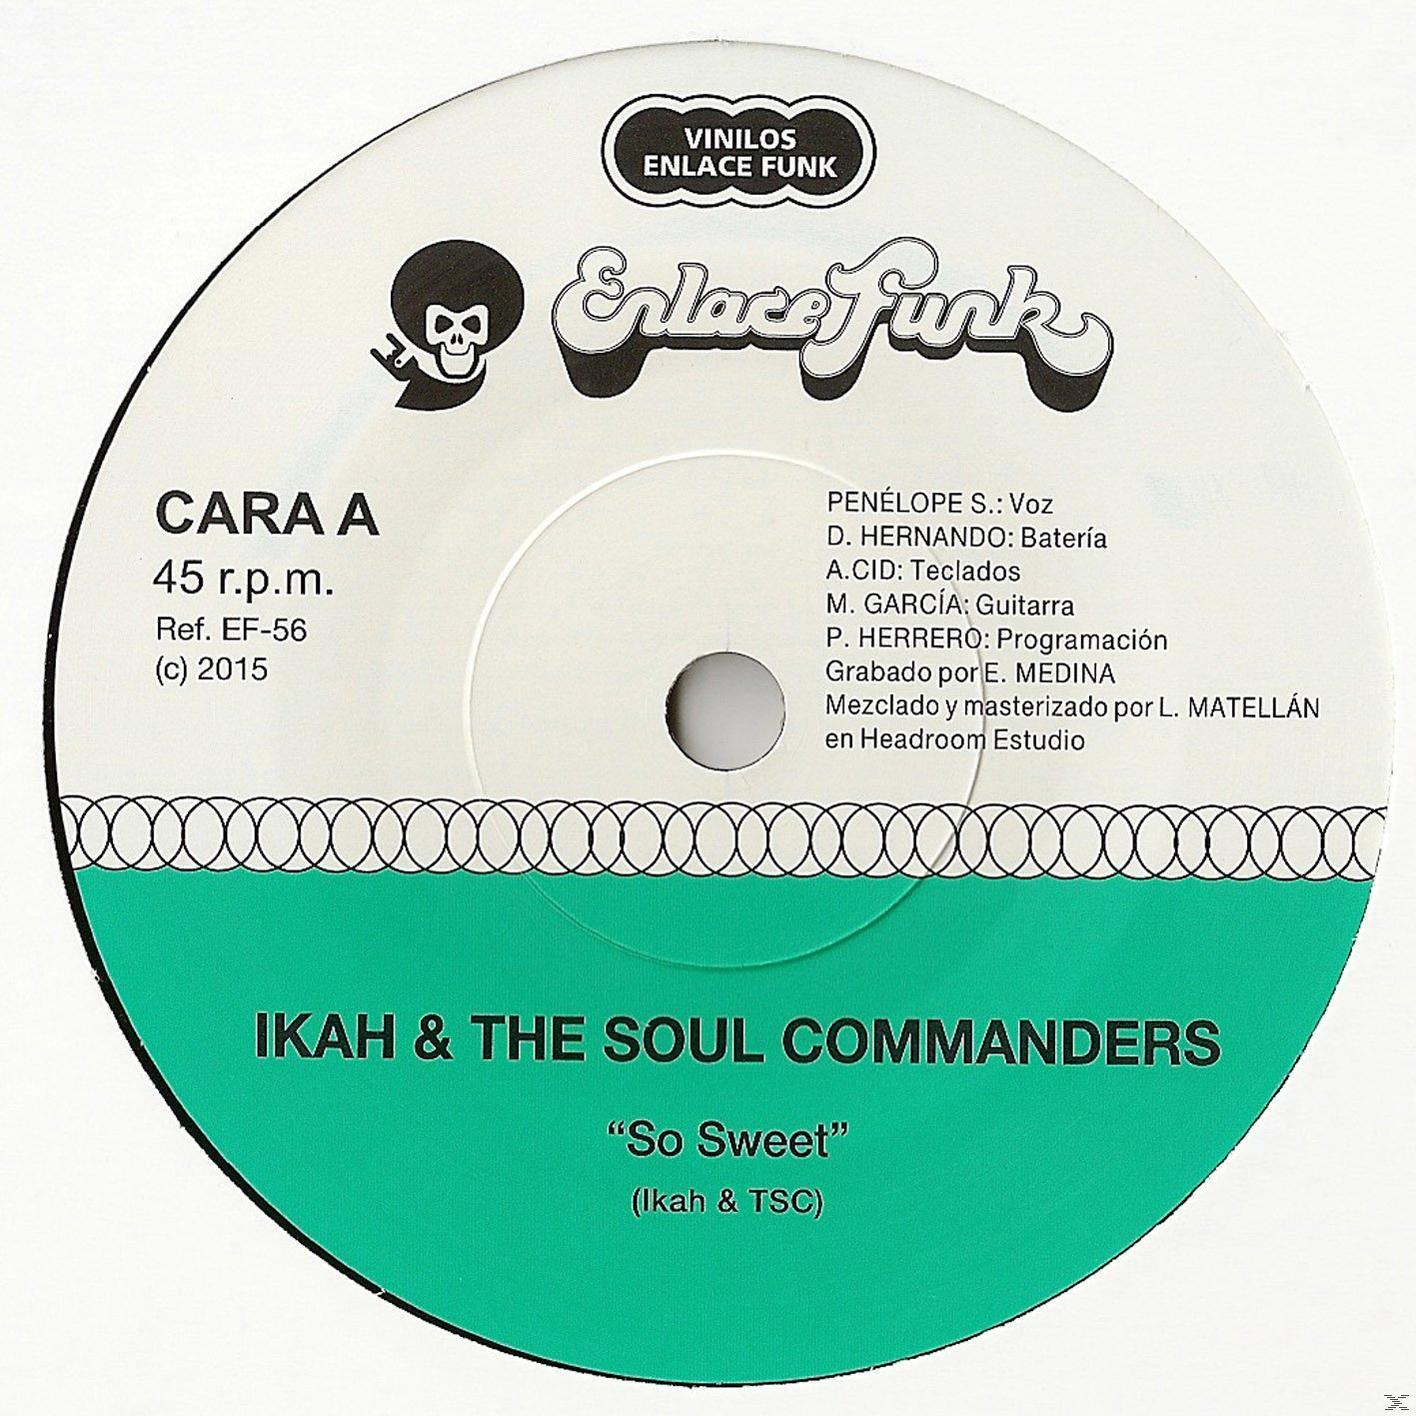 Ikah, THE - SO SOUL - COMMANDERS SWEET (Vinyl)